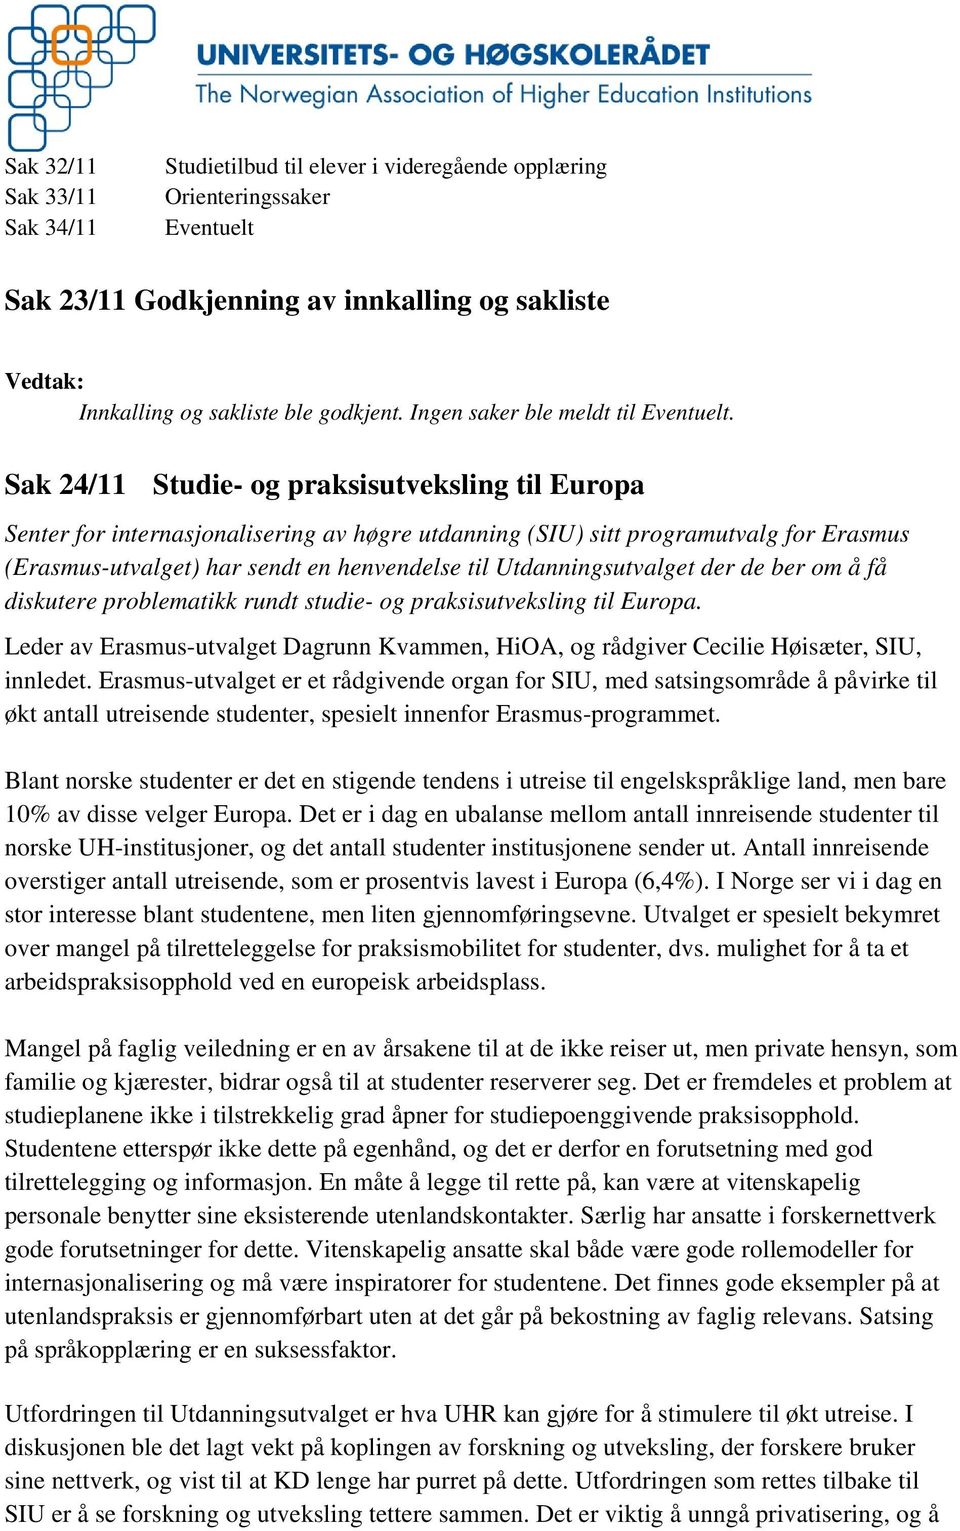 Sak 24/11 Studie- og praksisutveksling til Europa Senter for internasjonalisering av høgre utdanning (SIU) sitt programutvalg for Erasmus (Erasmus-utvalget) har sendt en henvendelse til